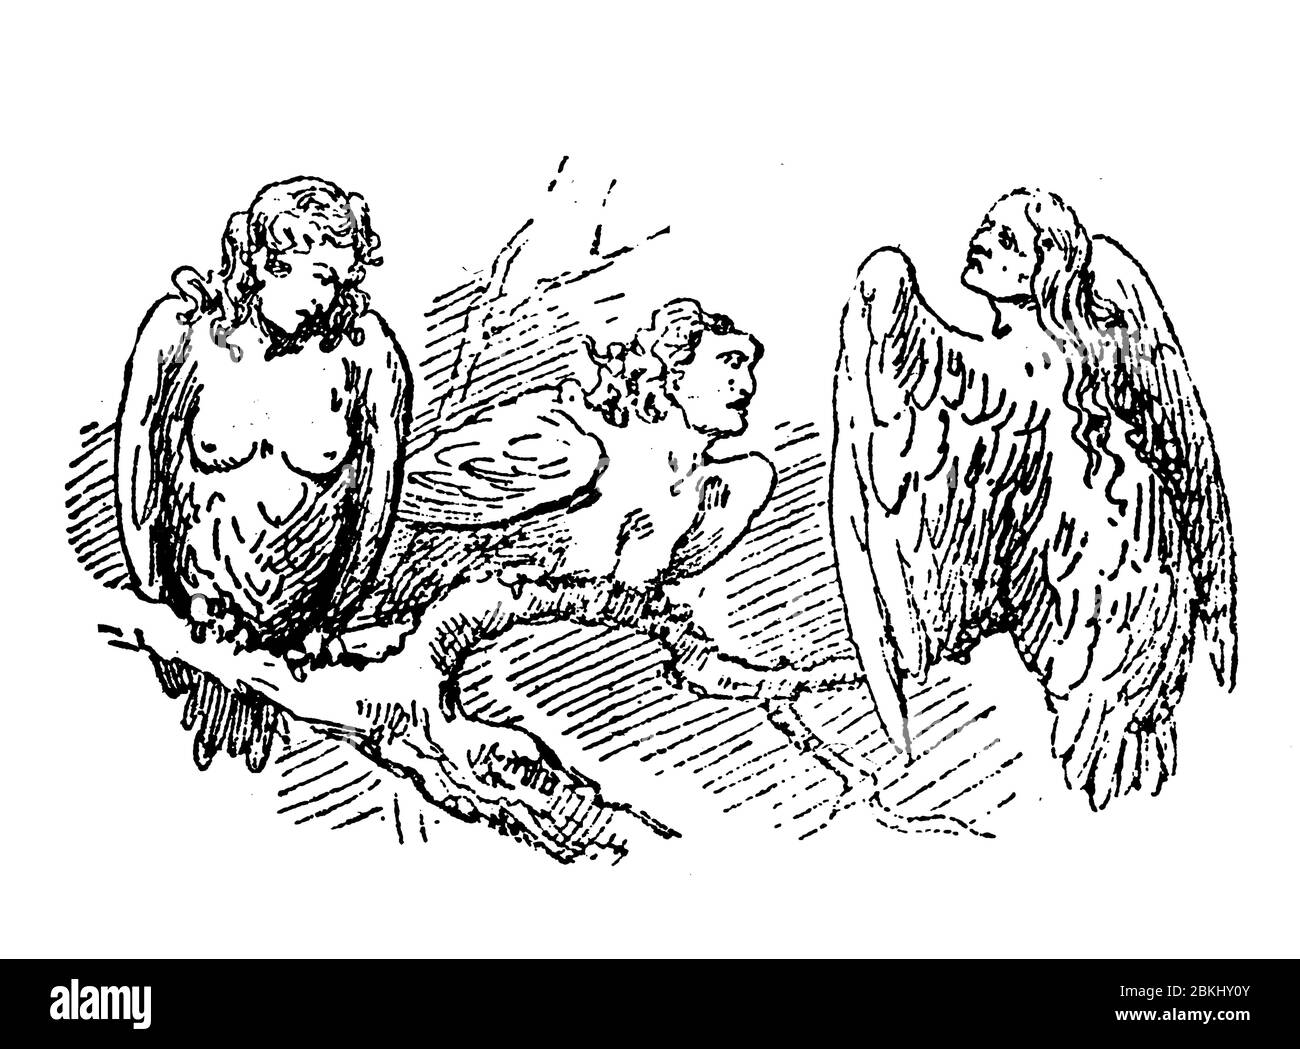 Drei Harpies, halb menschliche Wesen mit Frauenköpfen und Halbvogel mit Flügeln und Krallen, Imitation von Sturmwinden in der griechischen und römischen Mythologie Stockfoto